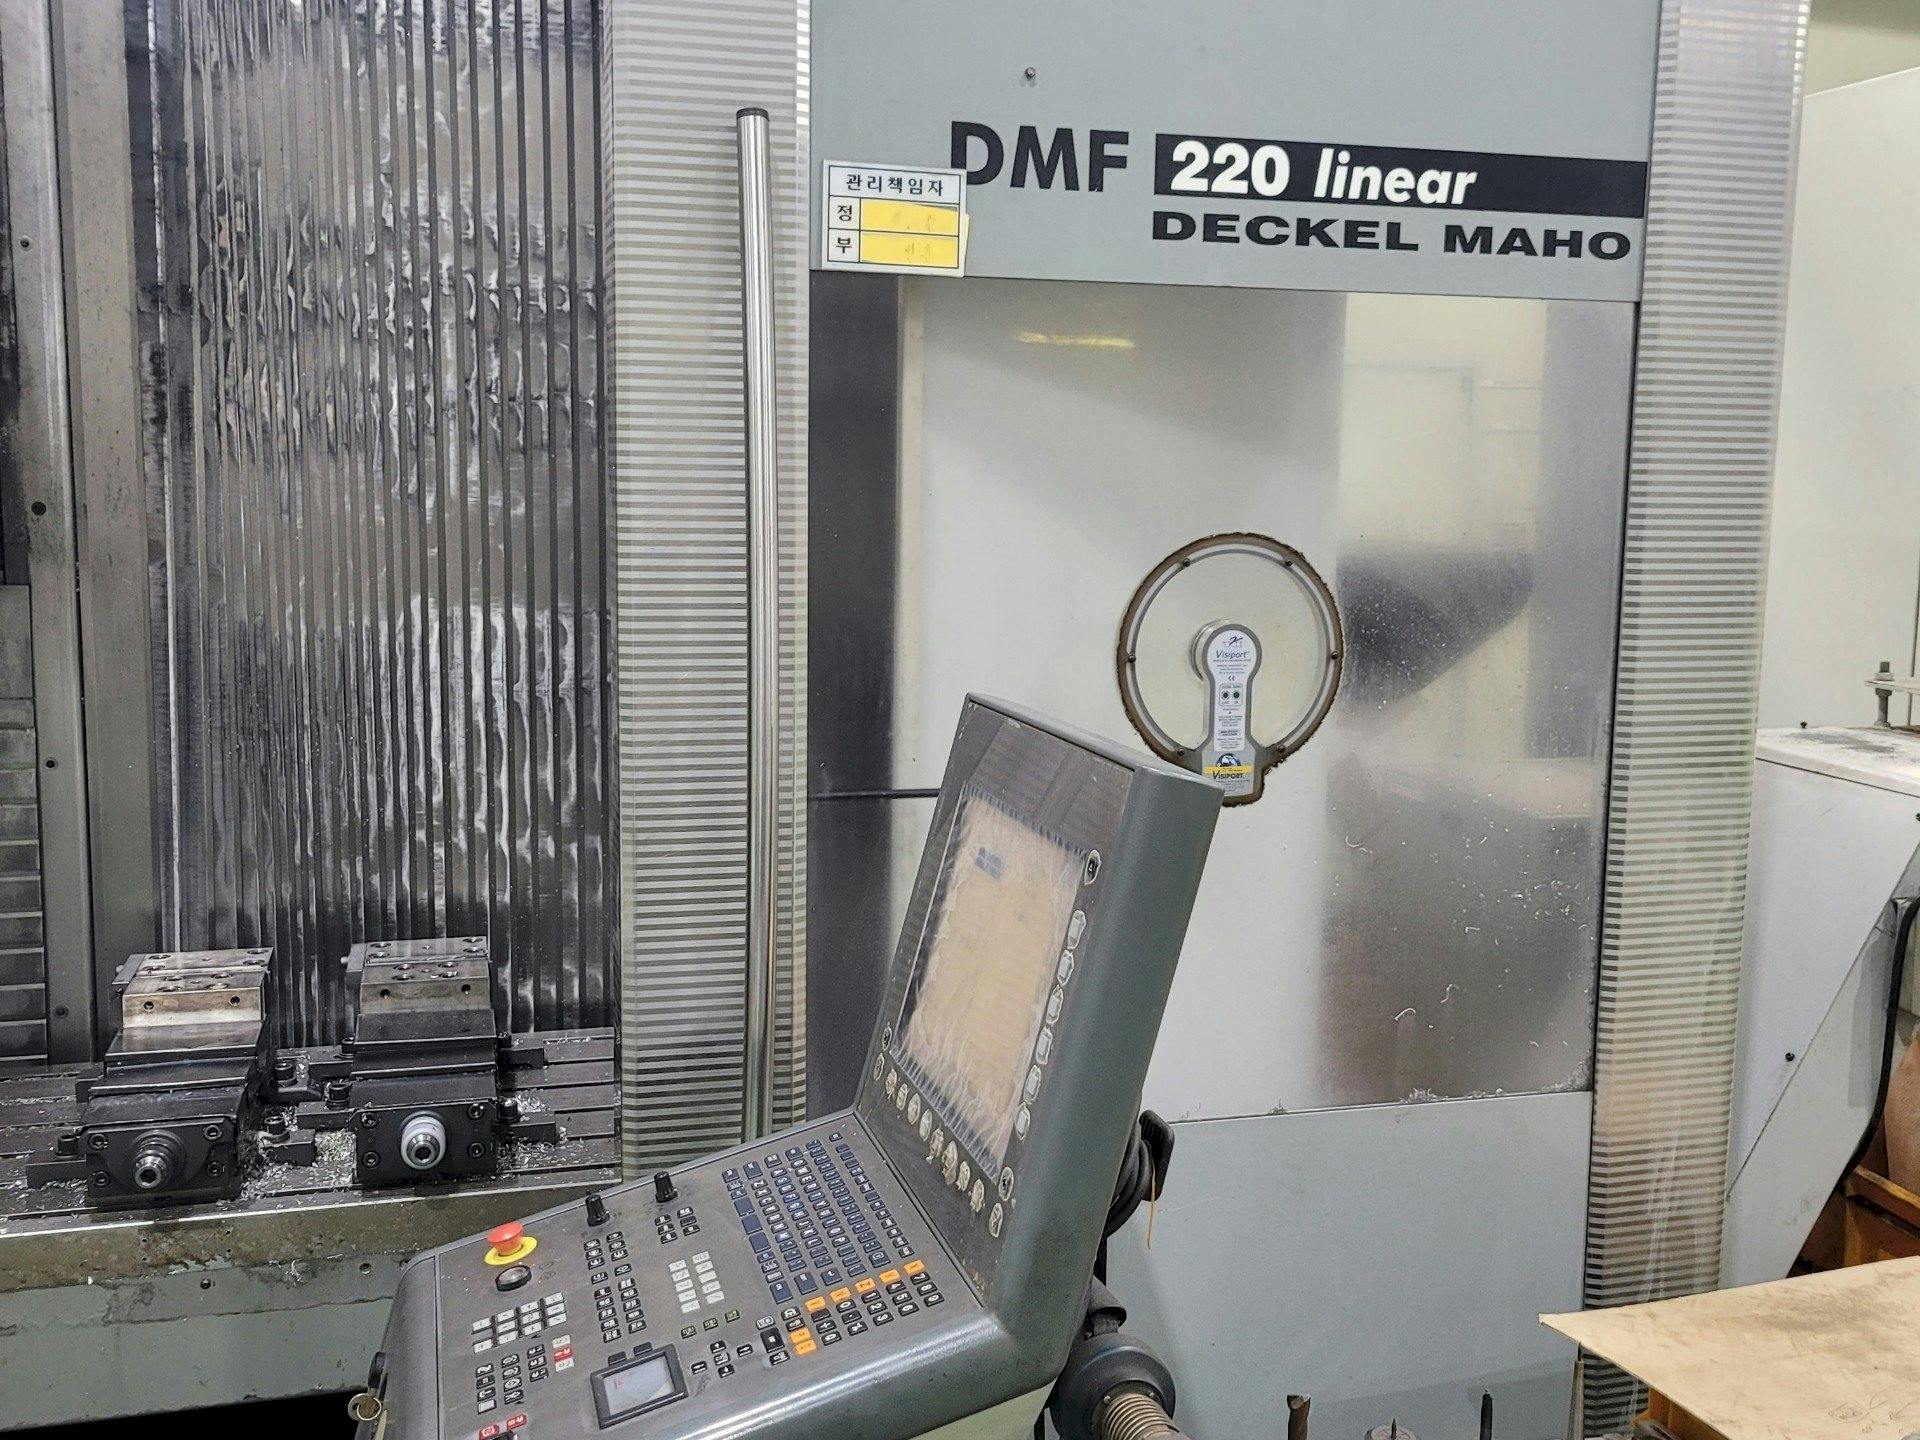 Frontansicht der DECKEL MAHO DMF 220 Linear  Maschine